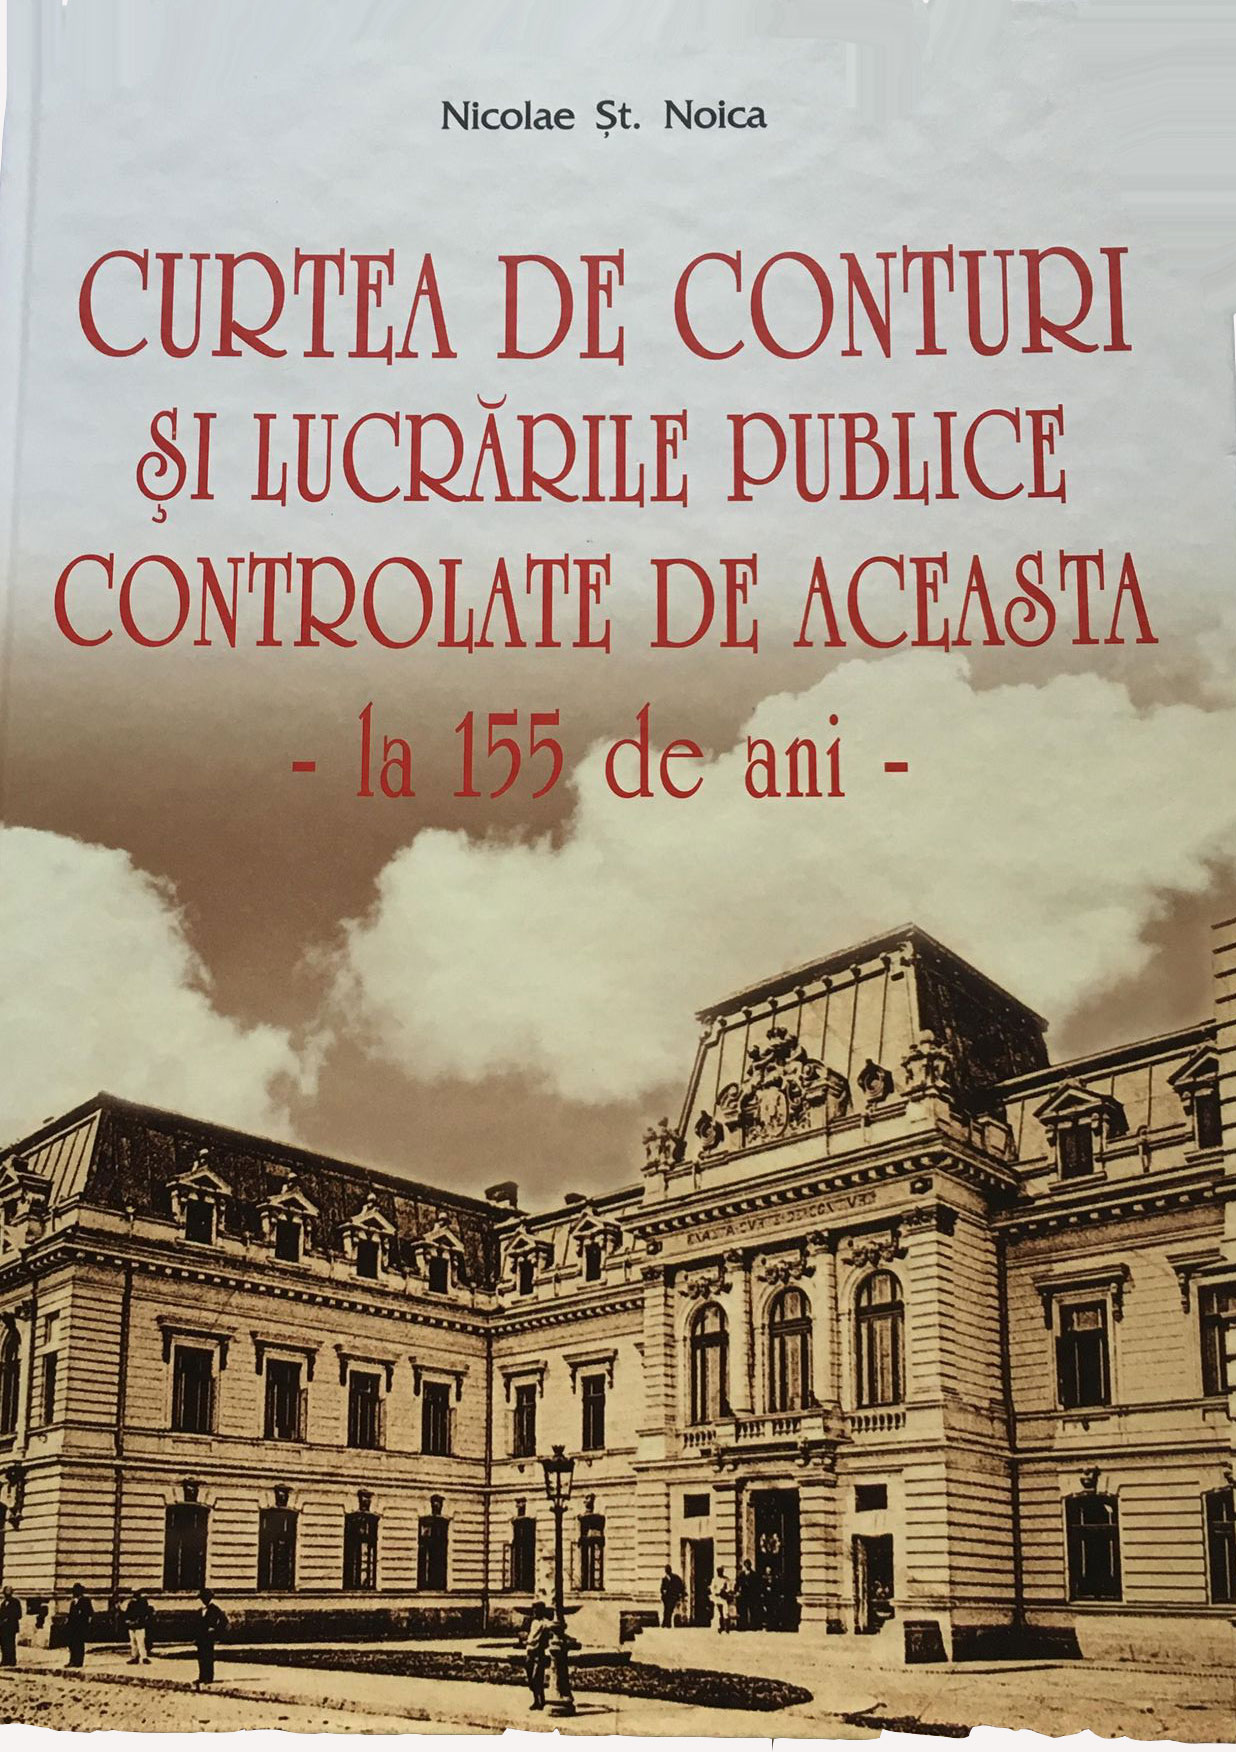 Curtea de Conturi si lucrarile publice controlate de aceasta | Nicolae St. Noica carturesti.ro Arta, arhitectura